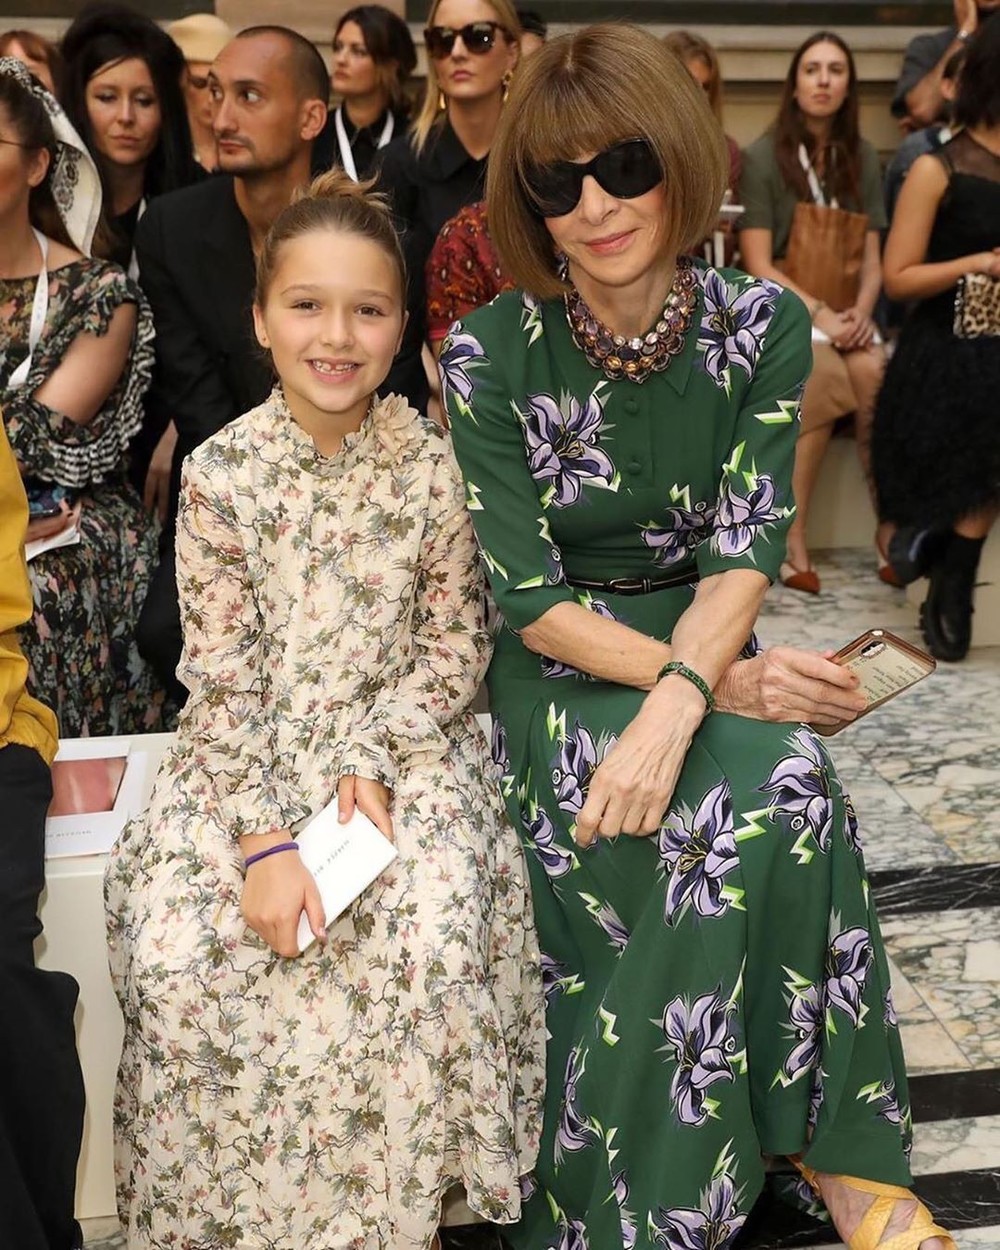  
Harper từng nhiều lần ngồi cạnh Anna Wintour – tổng biên tập Vogue Mỹ khi dự show của mẹ Vic.